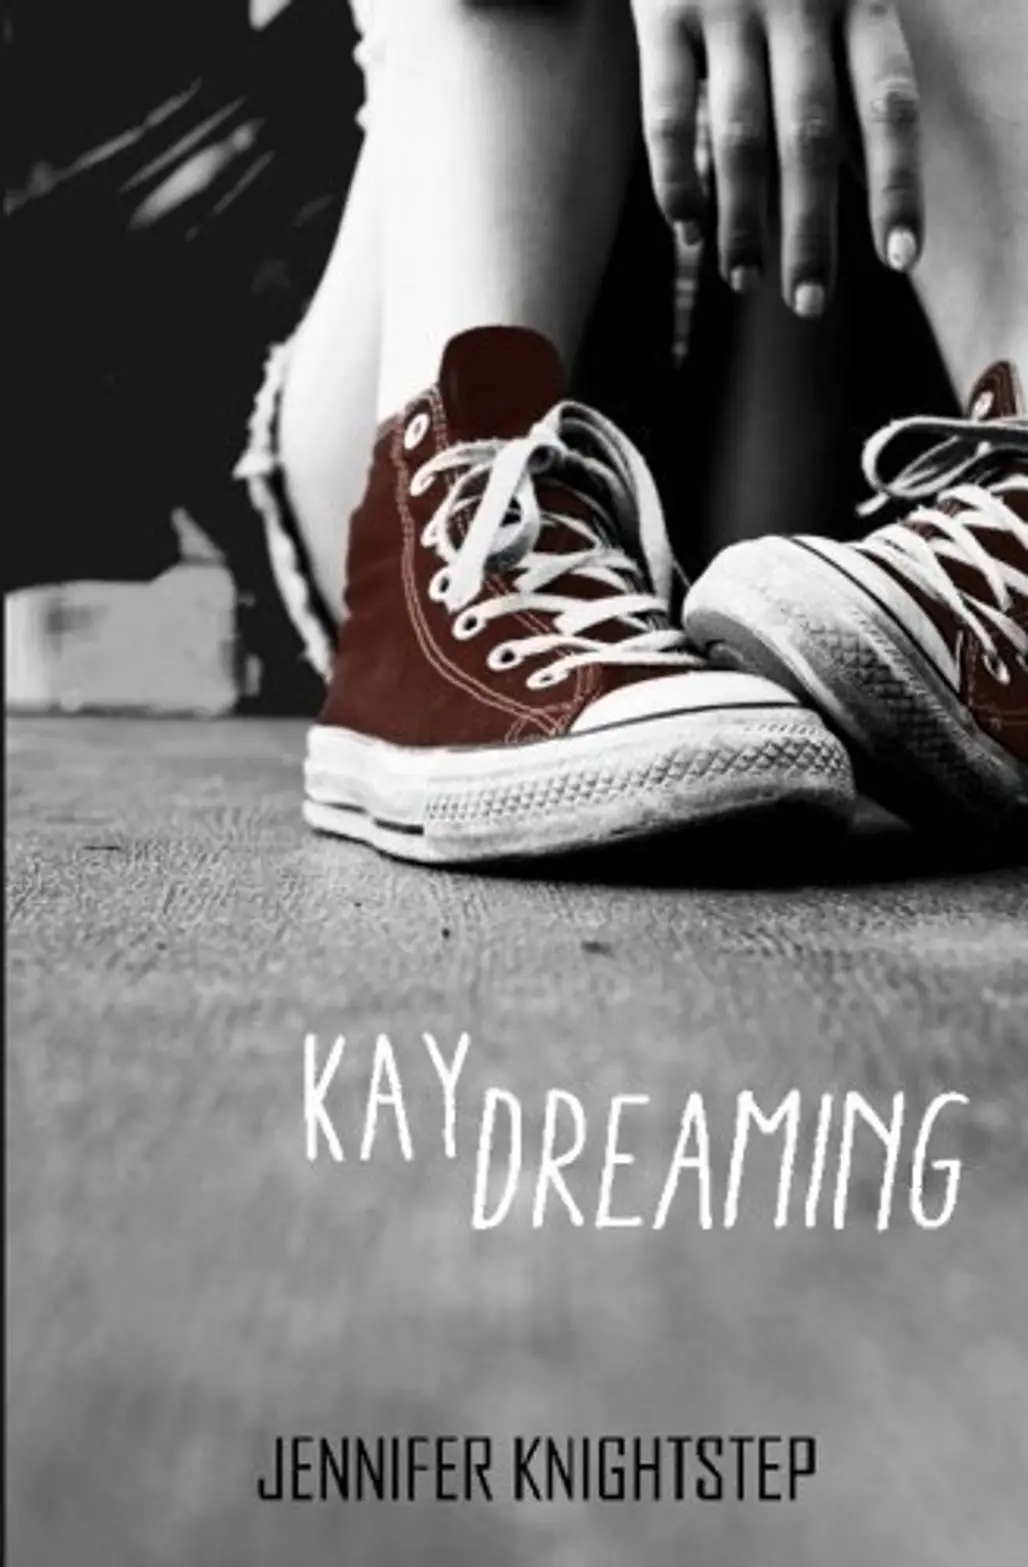 Kaydreaming